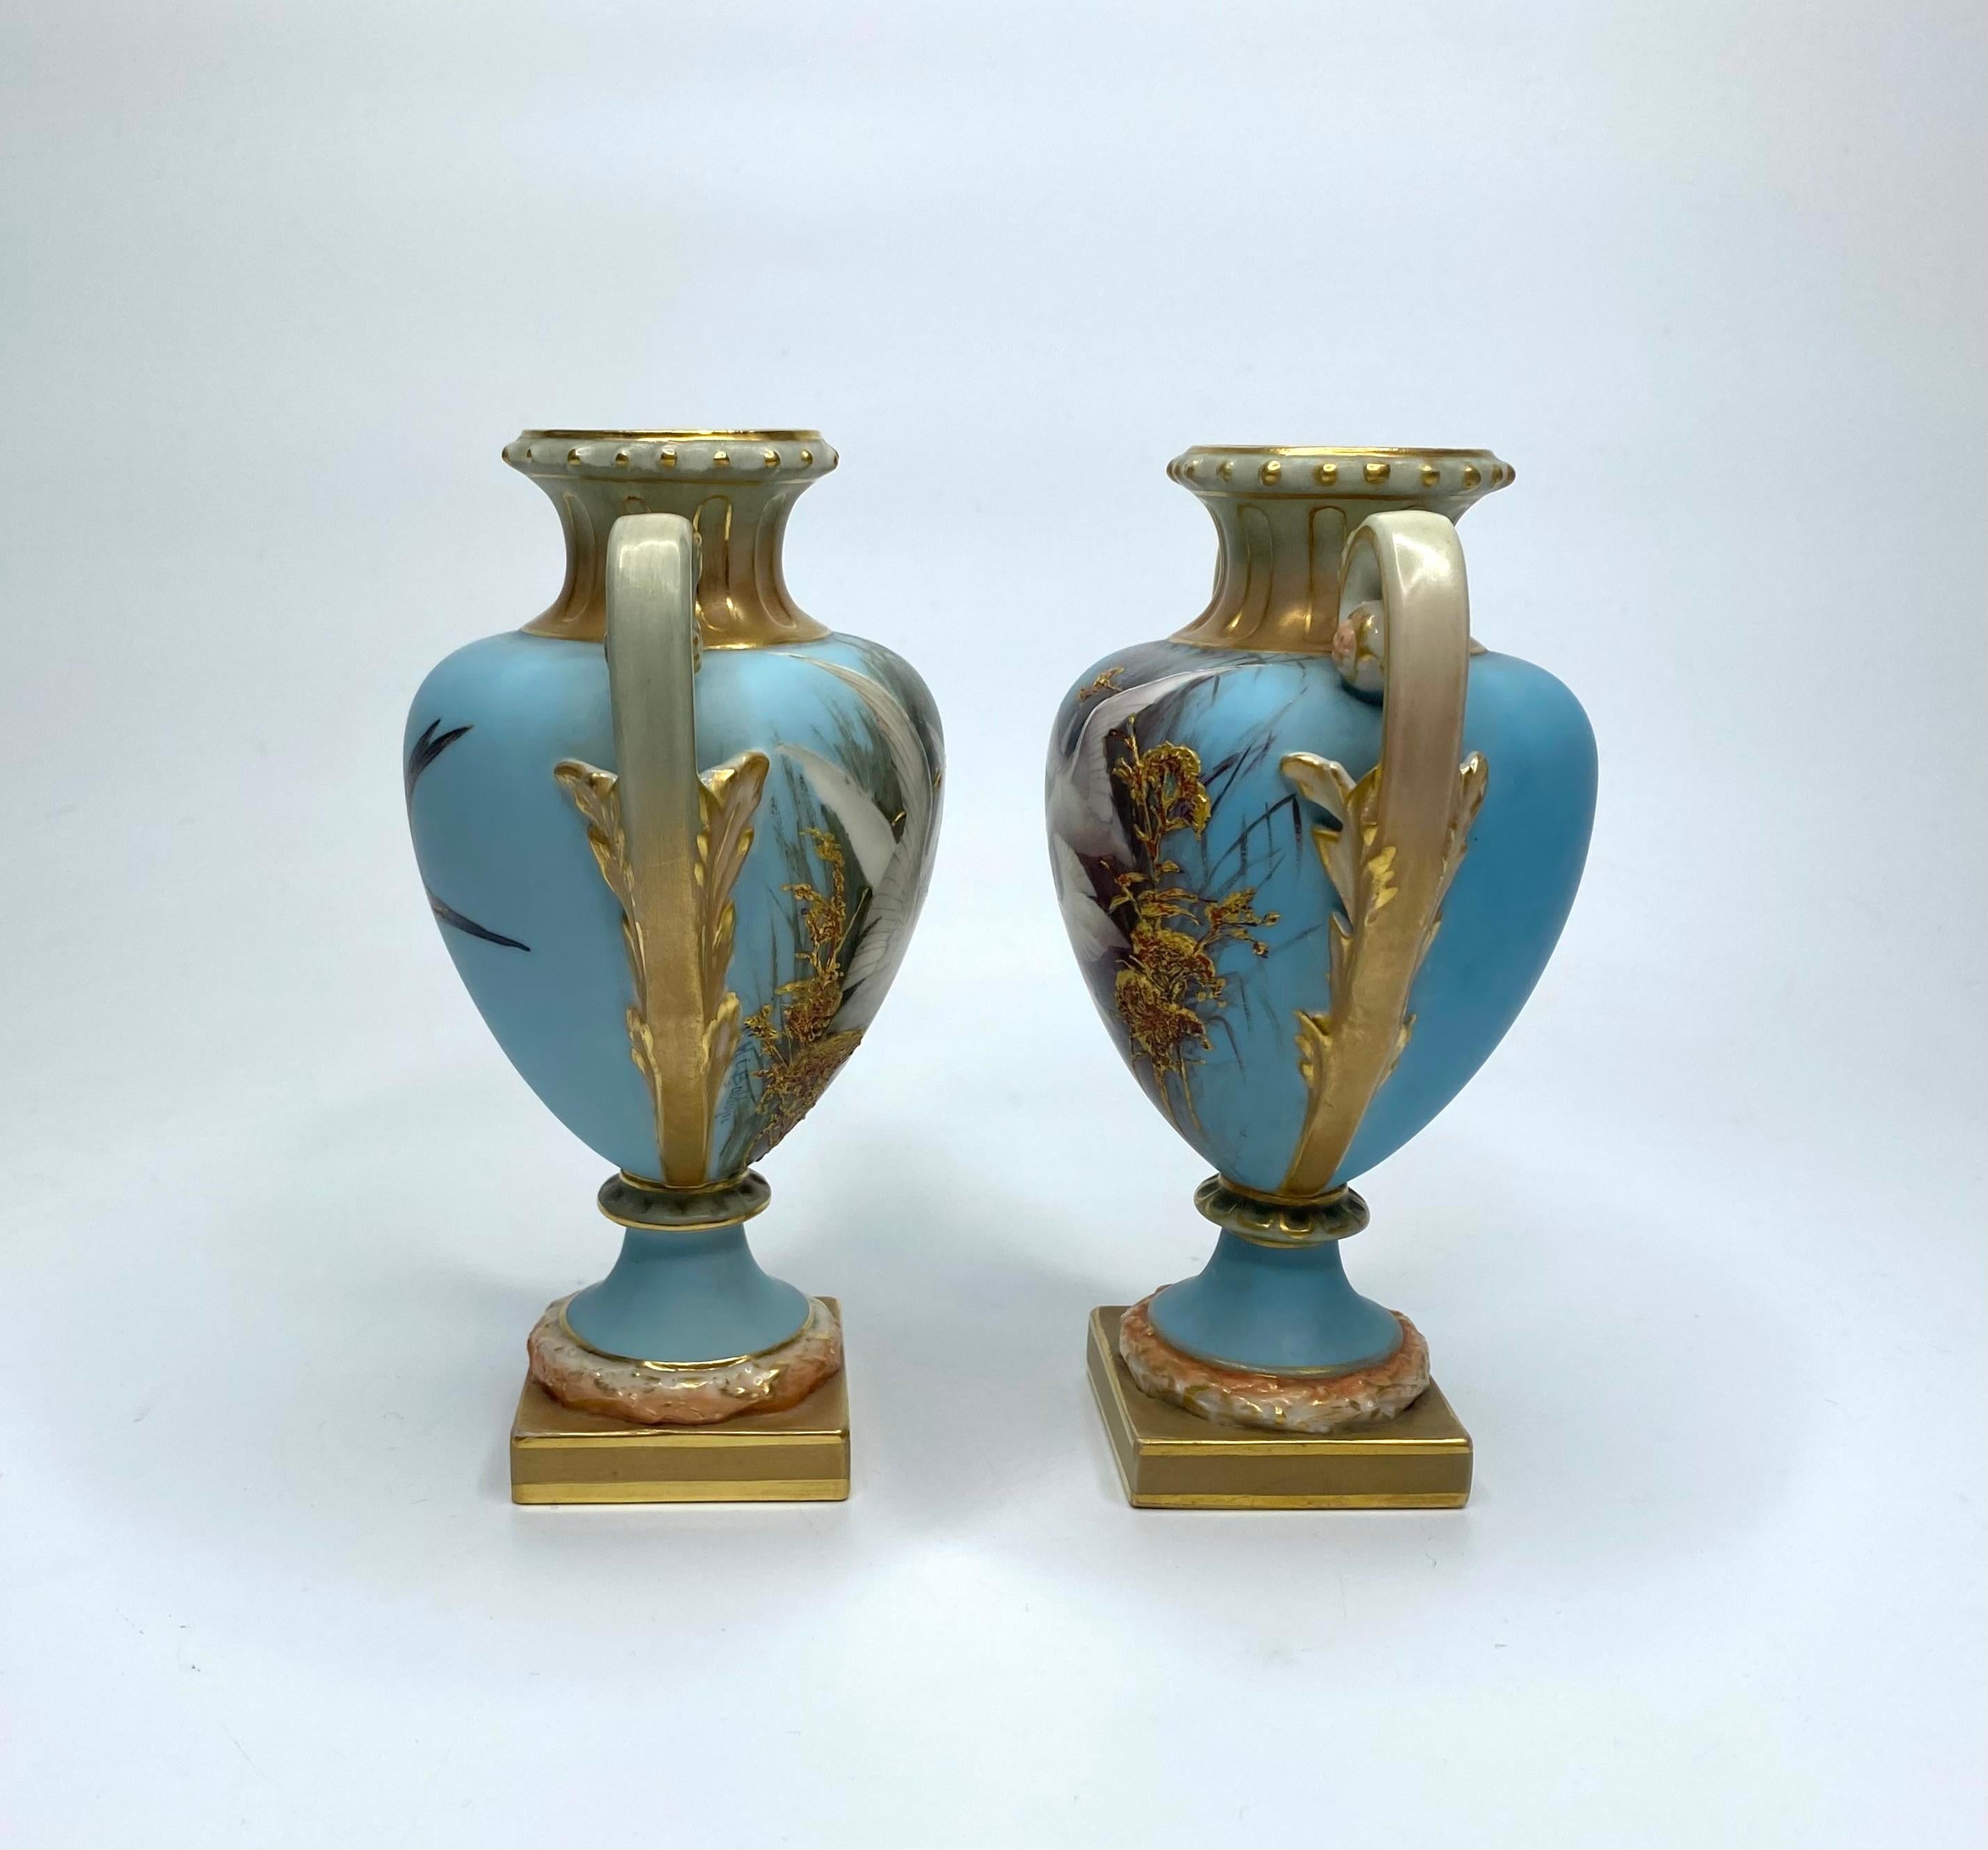 Paire de vases en porcelaine Royal Worcester, peints par Charles Baldwyn, datés de 1904. Peint à la main avec des cygnes émergeant des roseaux, sur un fond turquoise.
Les inverses avec les hirondelles en vol.
Les deux vases sont dotés de deux anses